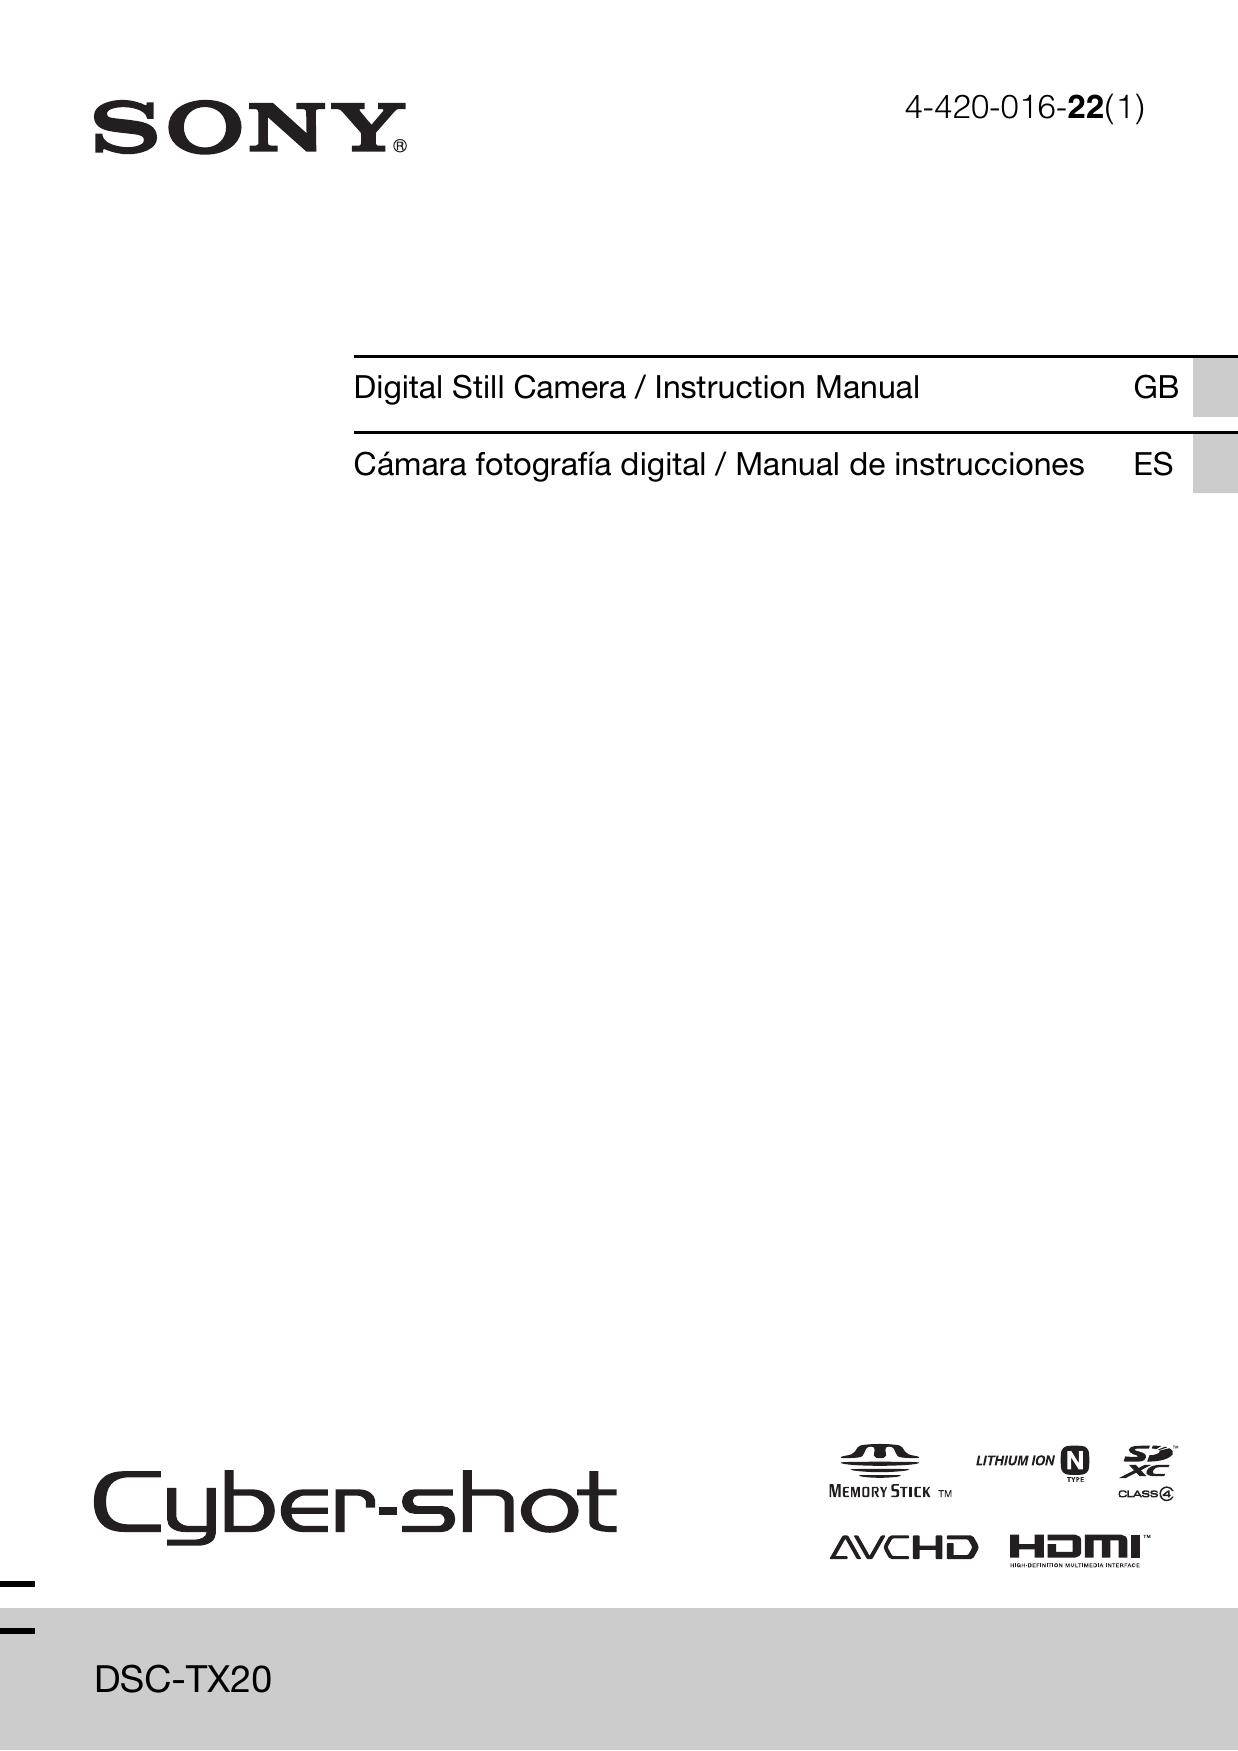 Sony 4-420-016-22(1) Digital Camera User Manual